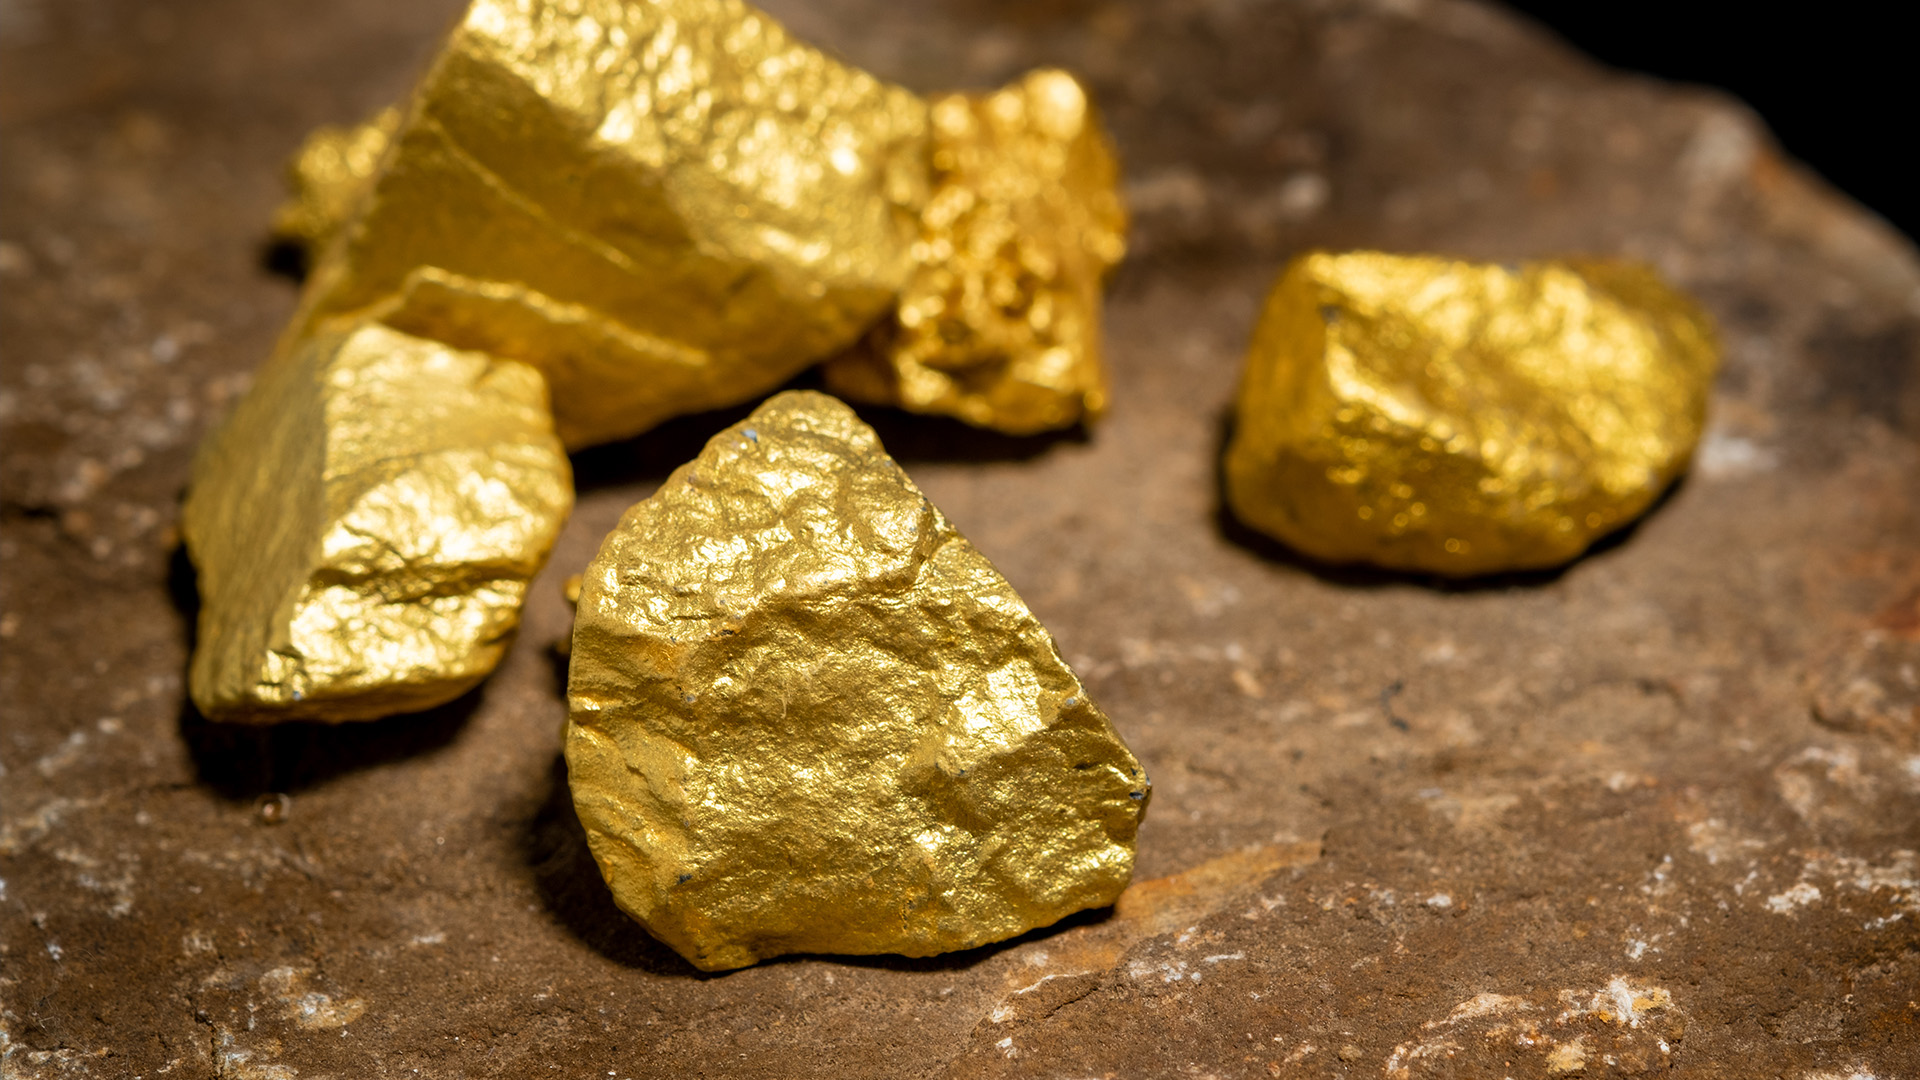 Les enquêteurs du SPVM ont démantelé un réseau criminel qui utilisait un stratagème complexe de fraude impliquant la transformation et le commerce de l’or.